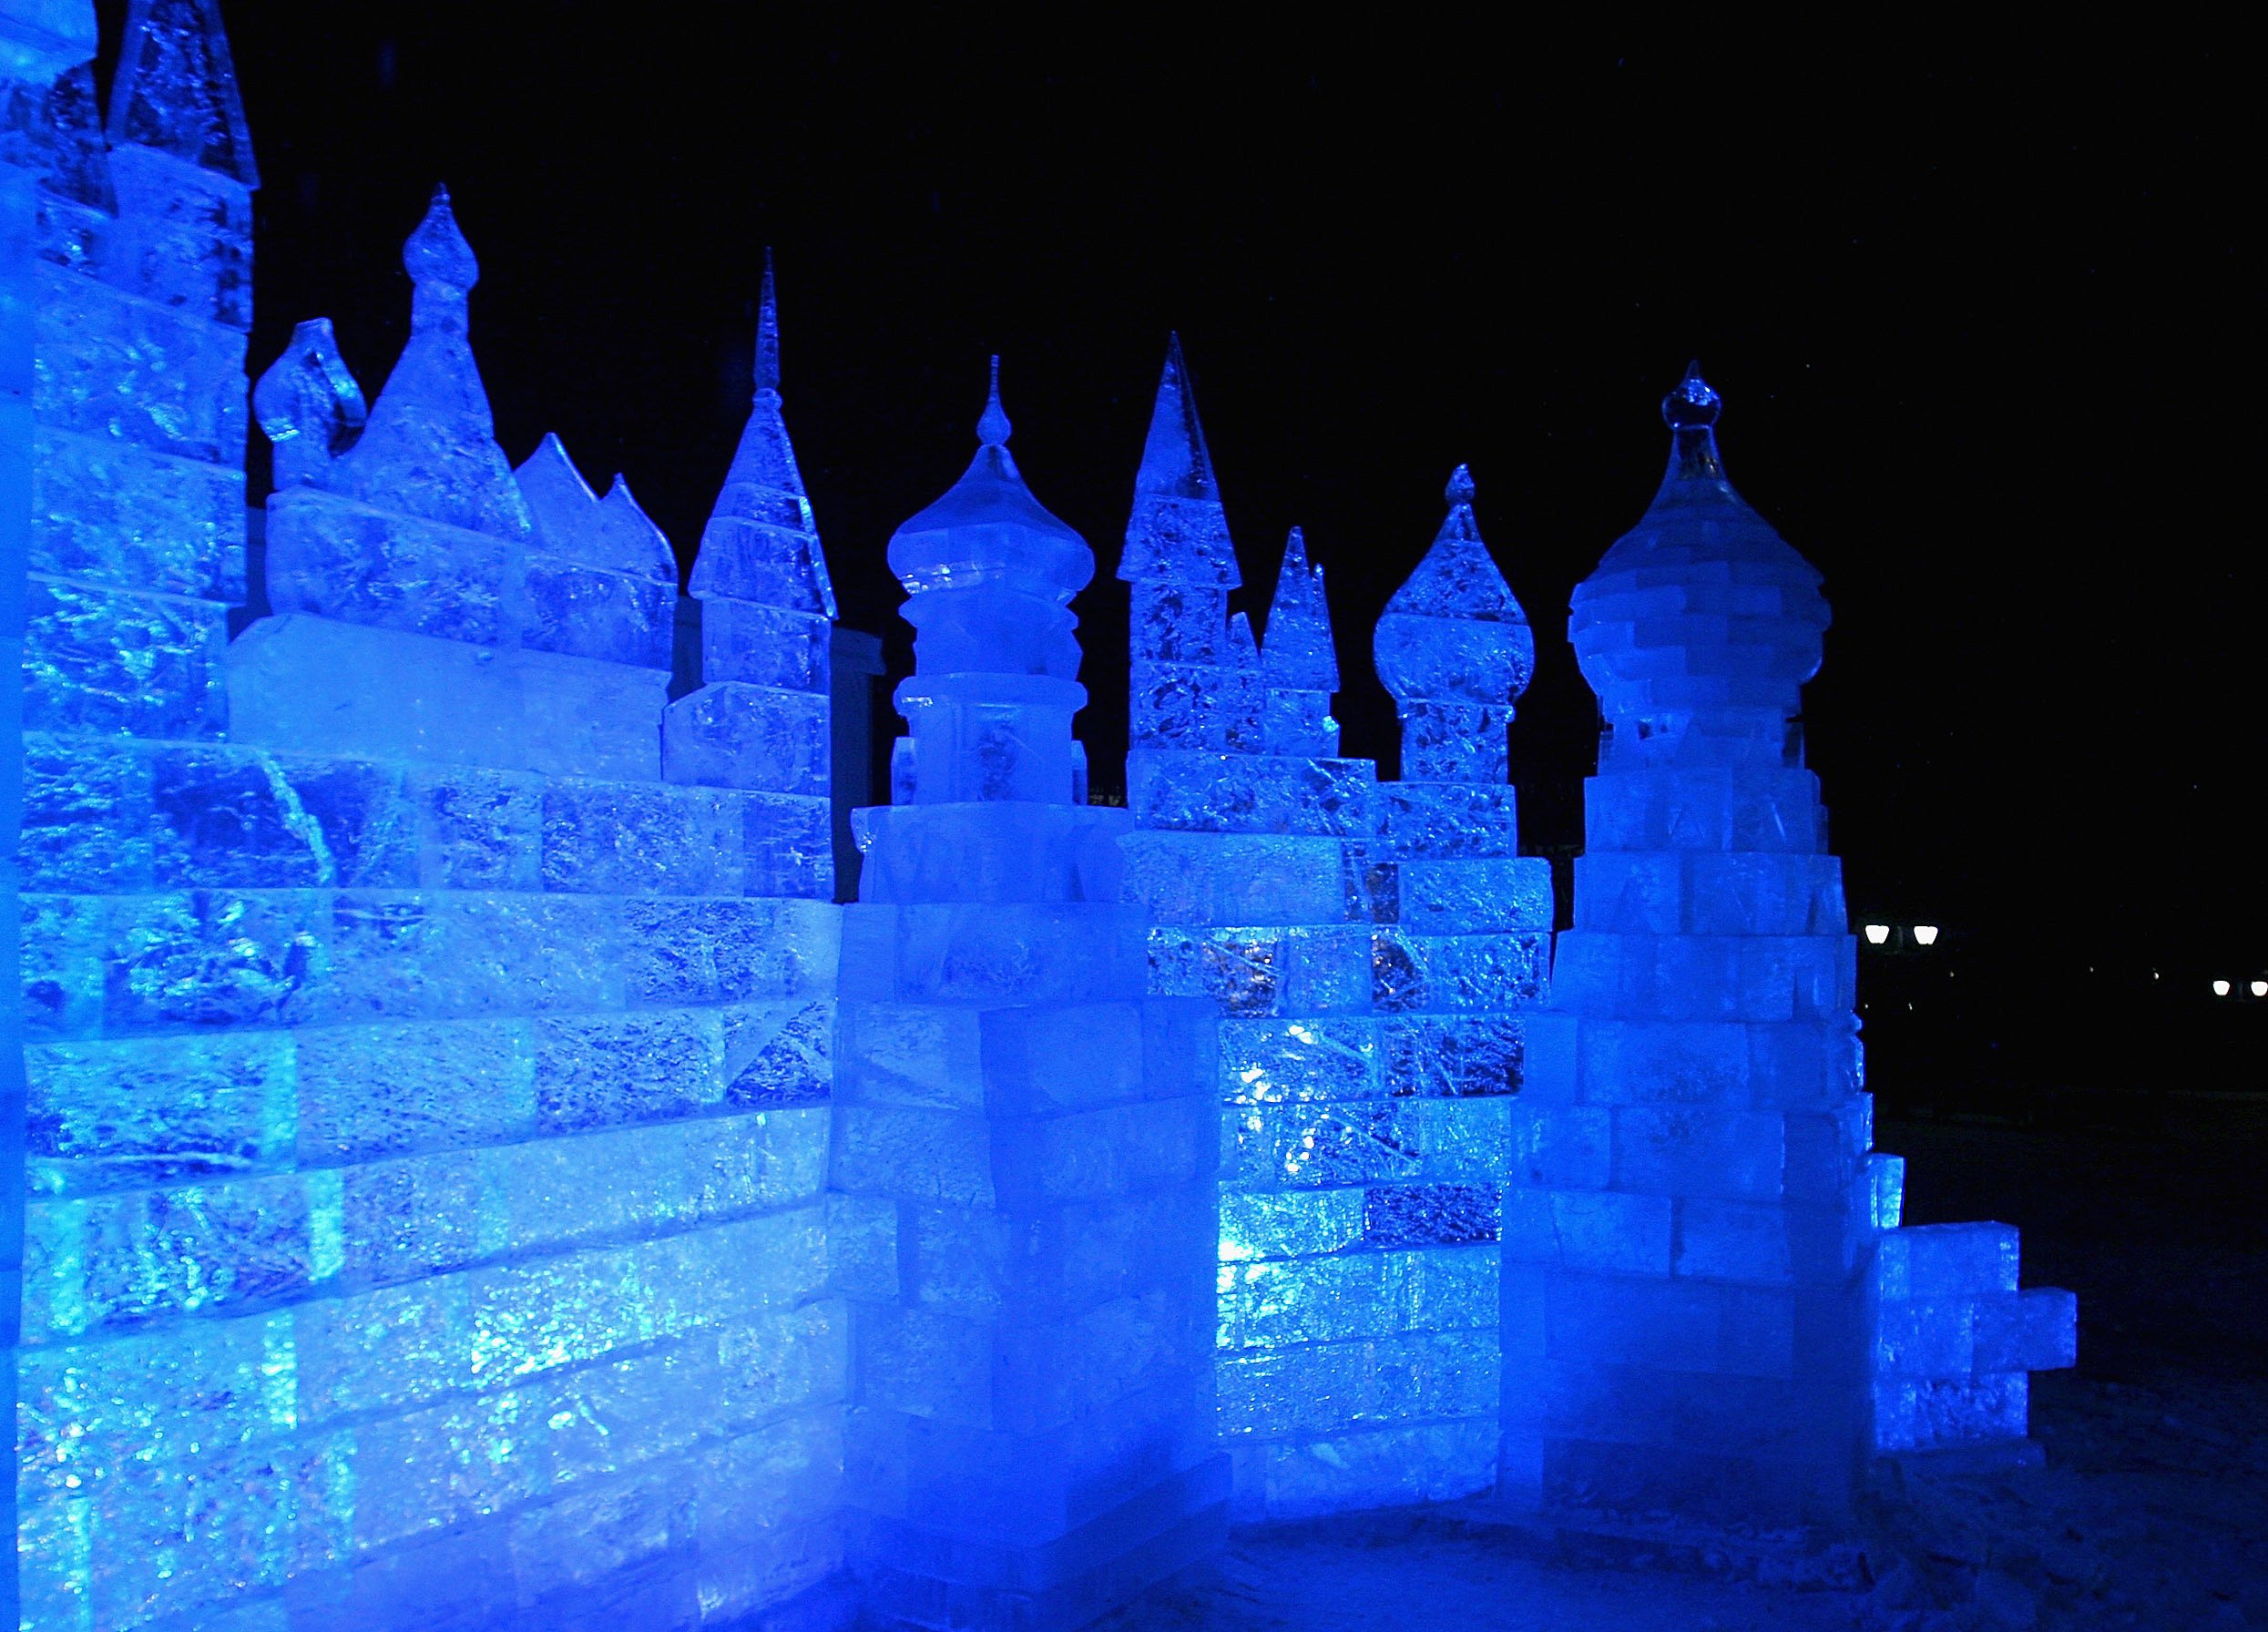 Как называется большой ледяной дворец снежной королевы. Ледяной дворец Фицджеральд. Ледяной дворец Анны Иоанновны. Замок снежной королевы изо льда. Ледяные замки Сильверстоун Колорадо.